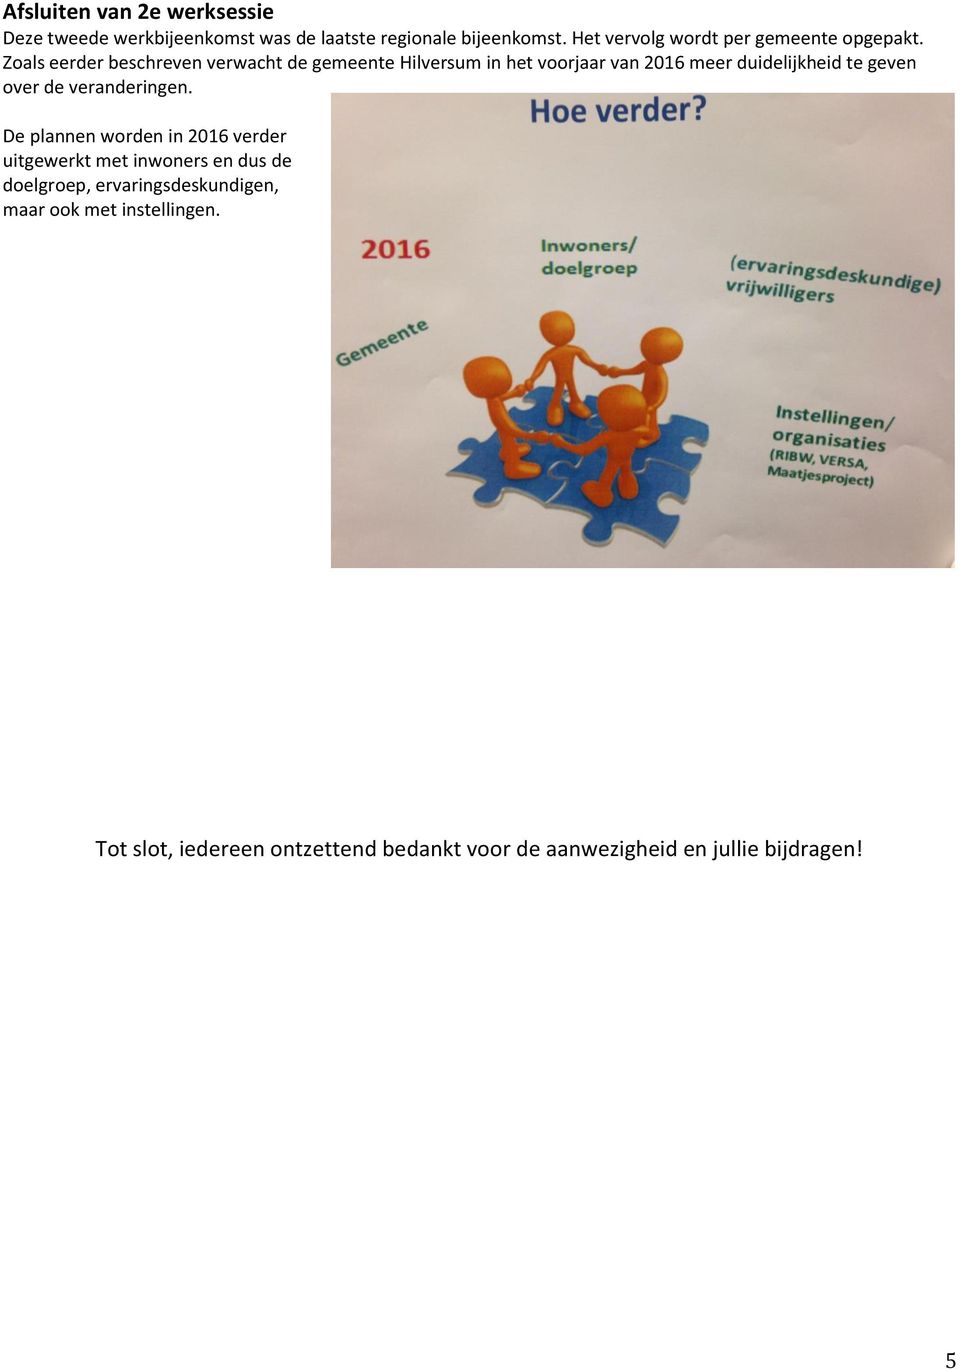 Zoals eerder beschreven verwacht de gemeente Hilversum in het voorjaar van 2016 meer duidelijkheid te geven over de